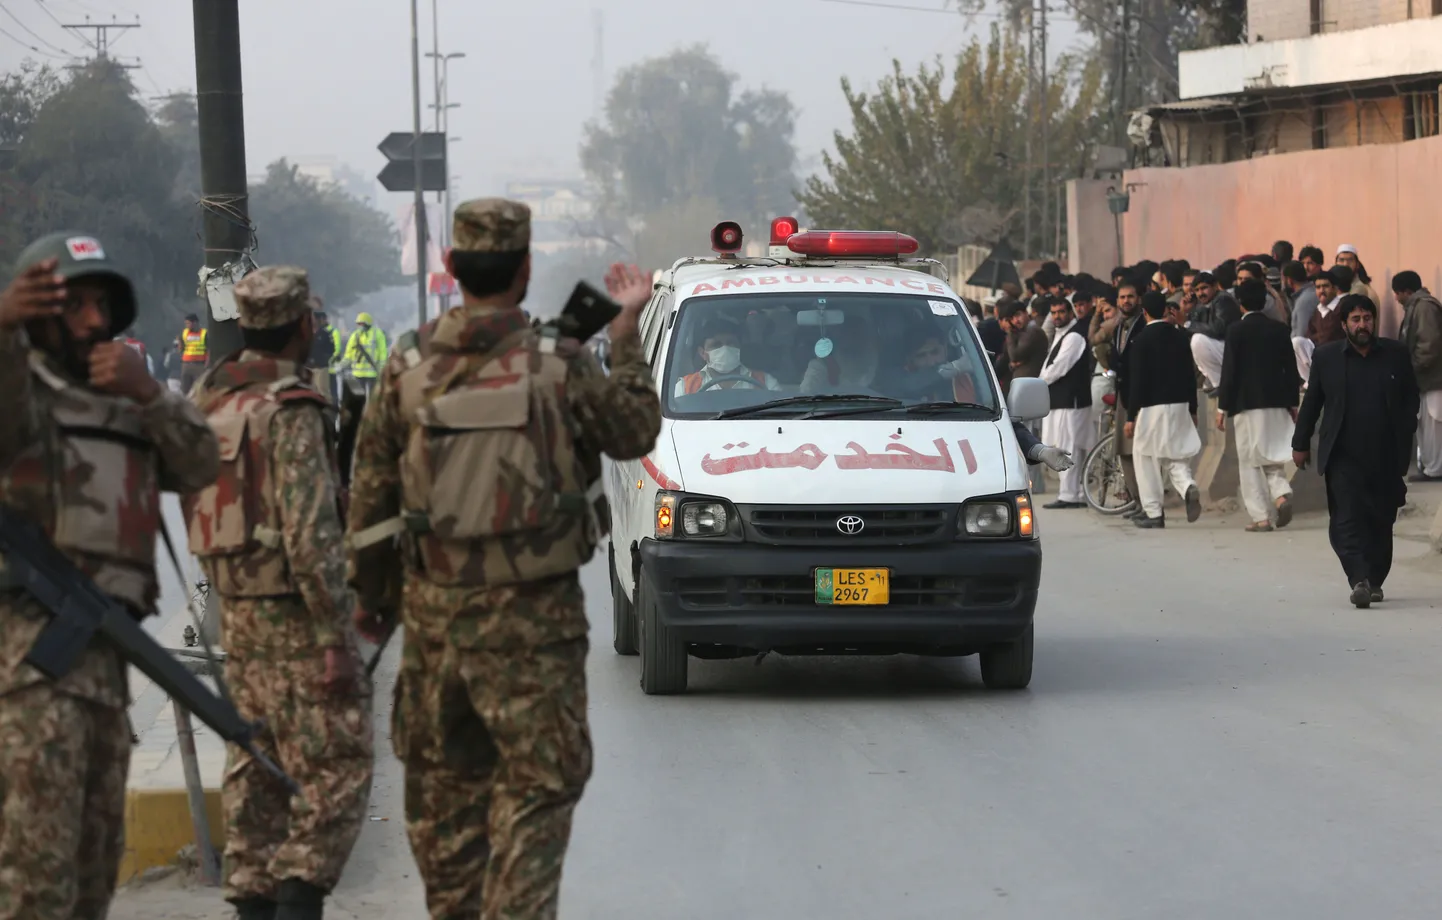 Теракт в Пакистане. На фото, скорая помощь и силы внутренних войск.